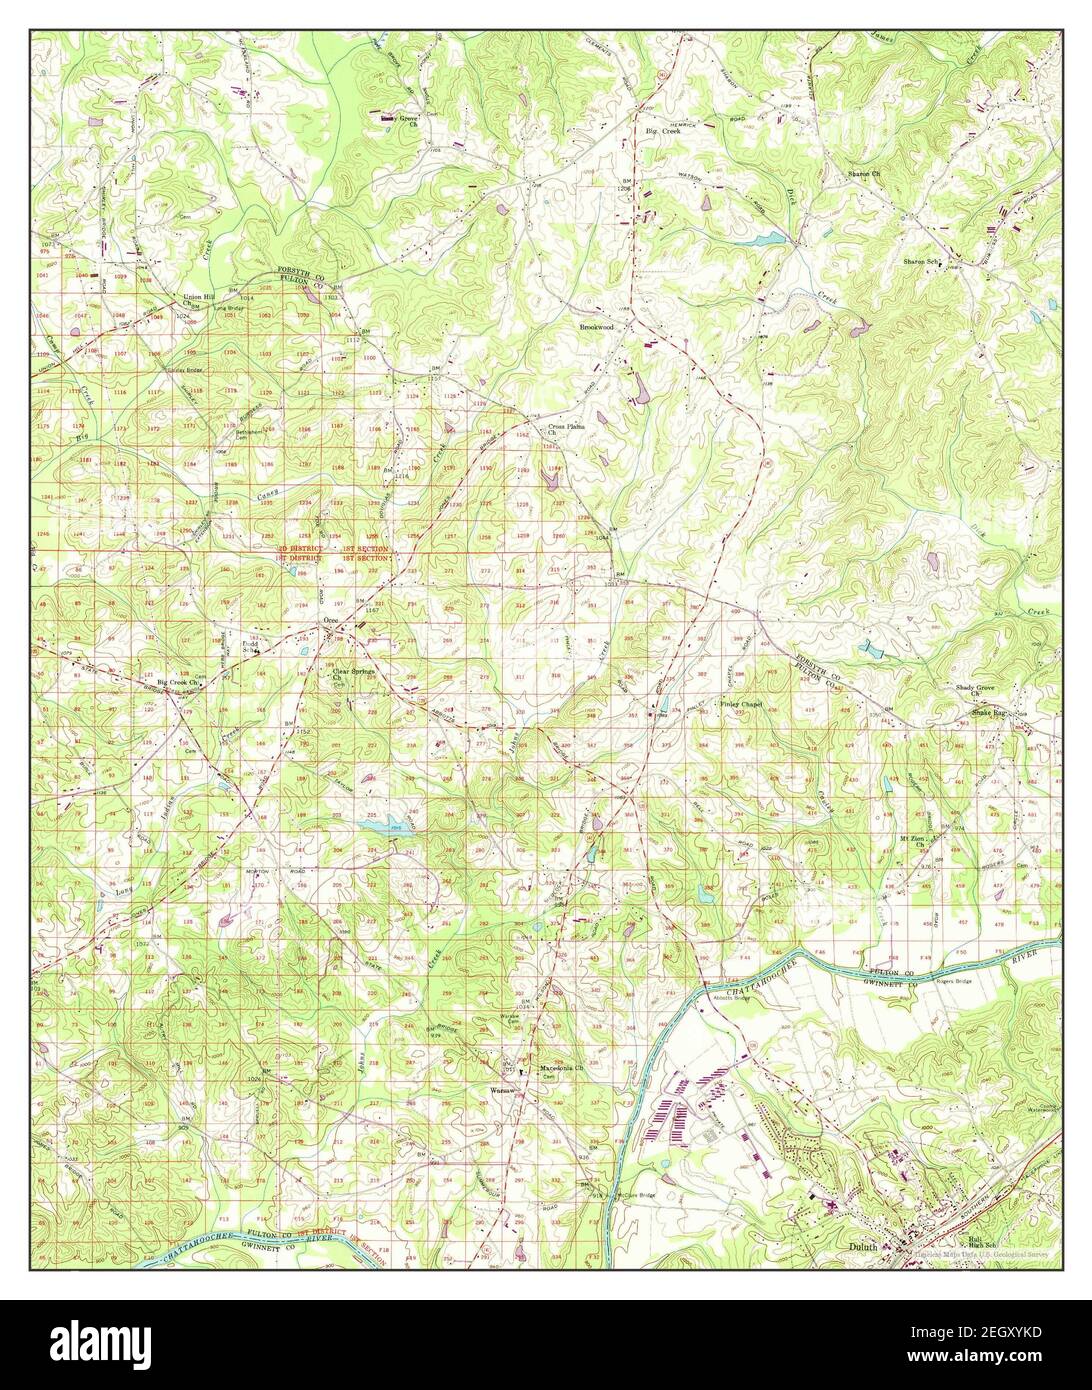 Duluth, Georgia, Karte 1956, 1:24000, Vereinigte Staaten von Amerika von Timeless Maps, Daten U.S. Geological Survey Stockfoto